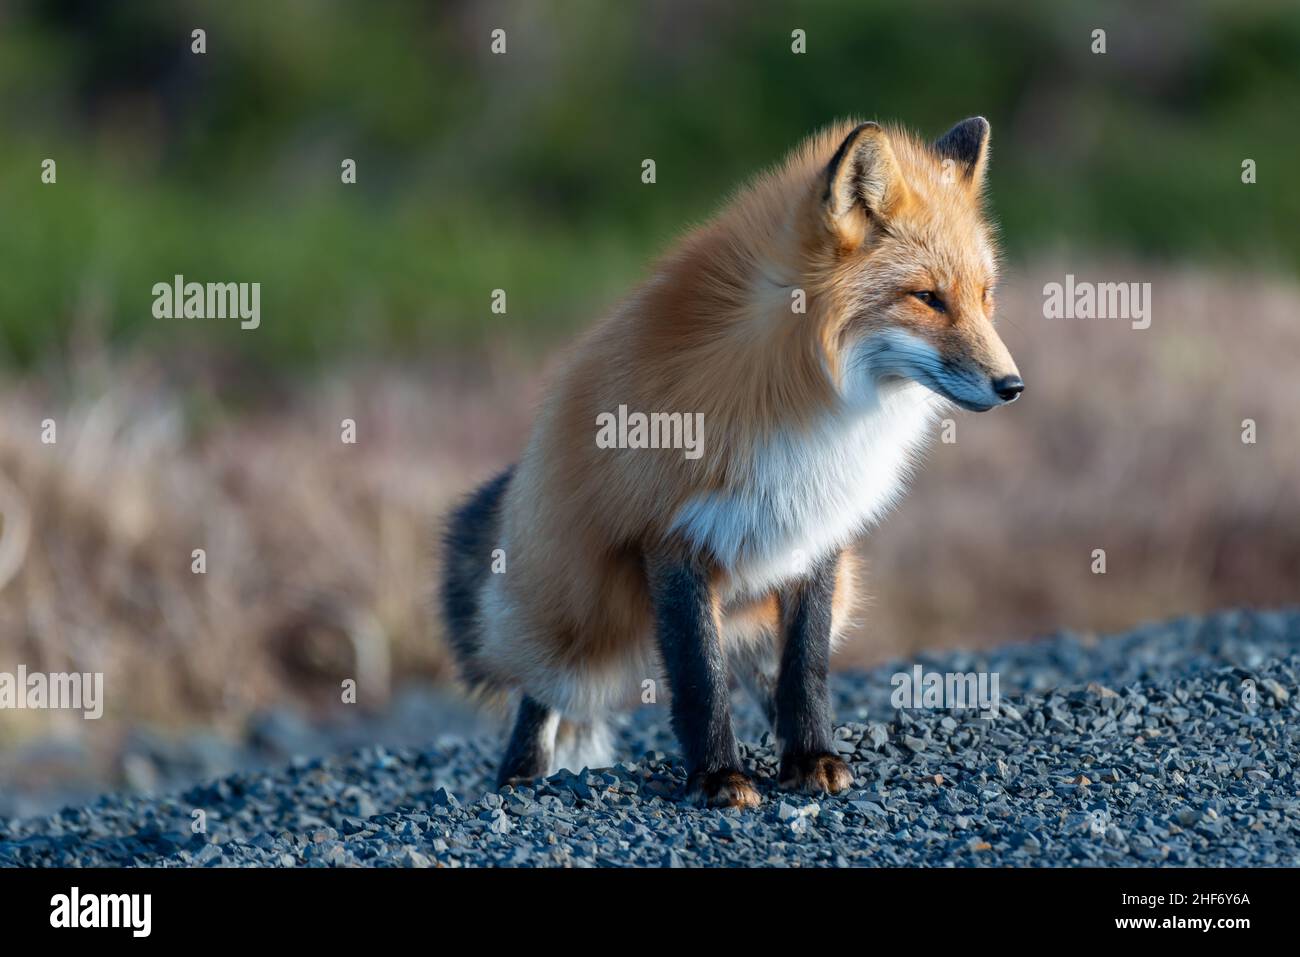 Un lindo joven salvaje verdadero zorro rojo está parado en las cuatro patas mirando atentamente por delante mientras caza. Tiene una mirada perforante aguda, piel suave y esponjosa naranja. Foto de stock